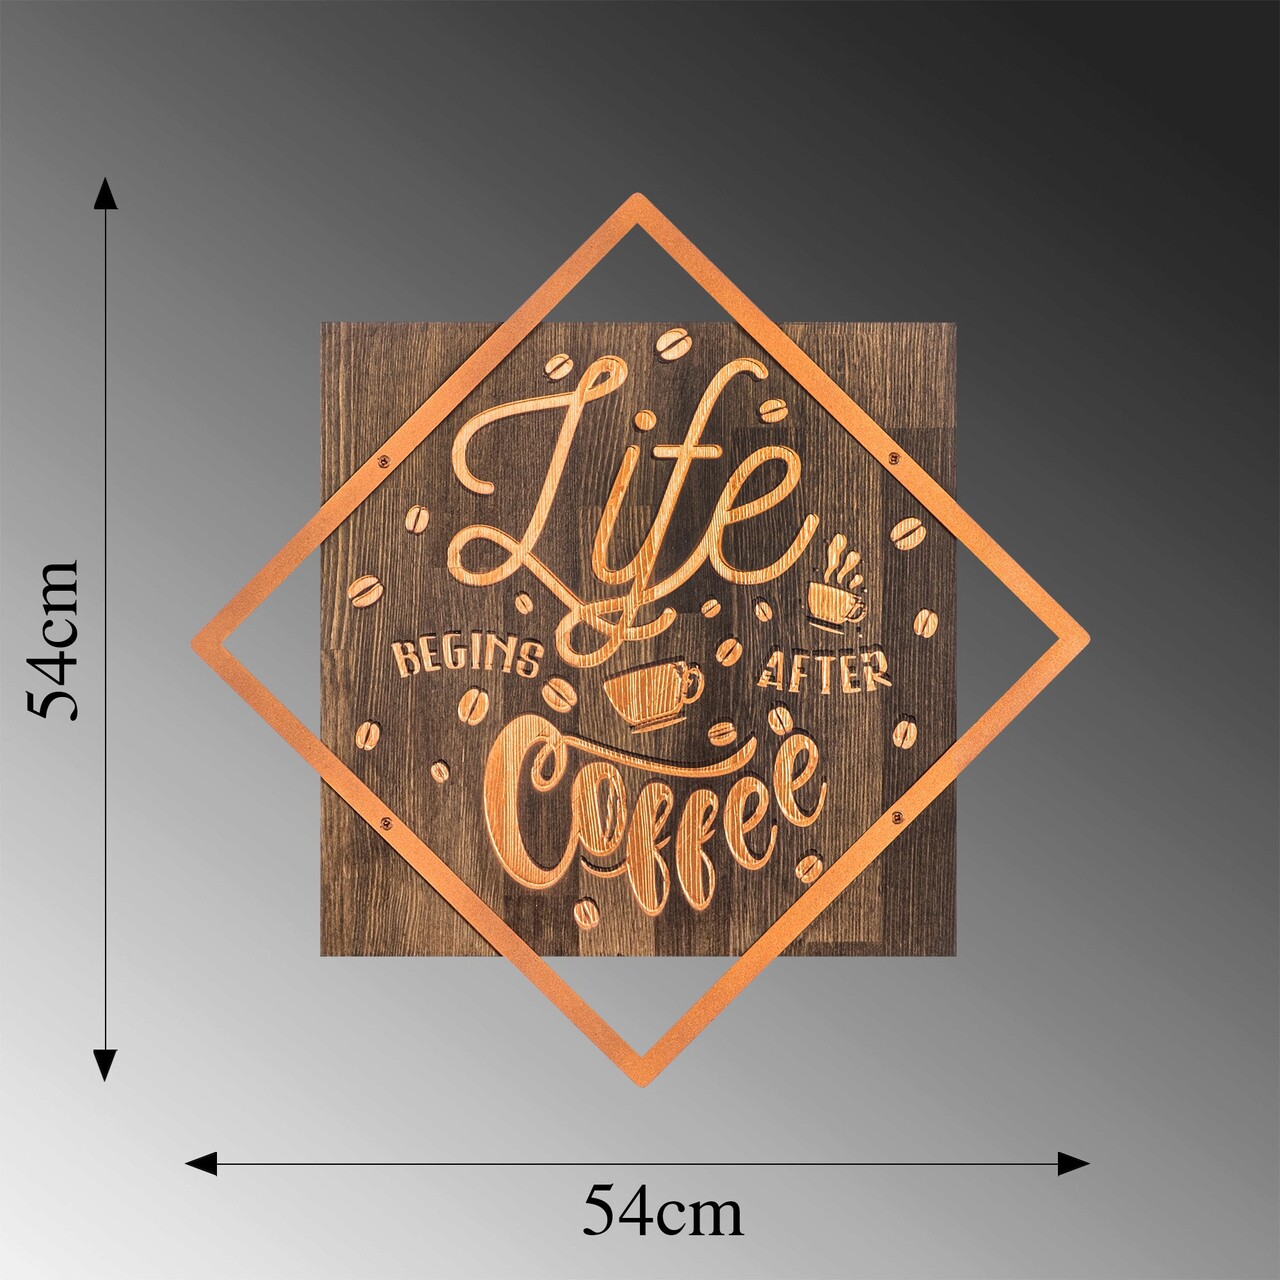 Decoratiune De Perete, Life Begins After Coffee, 50% Lemn/50% Metal, Dimensiune: 54 X 54 Cm, Nuc / Cupru